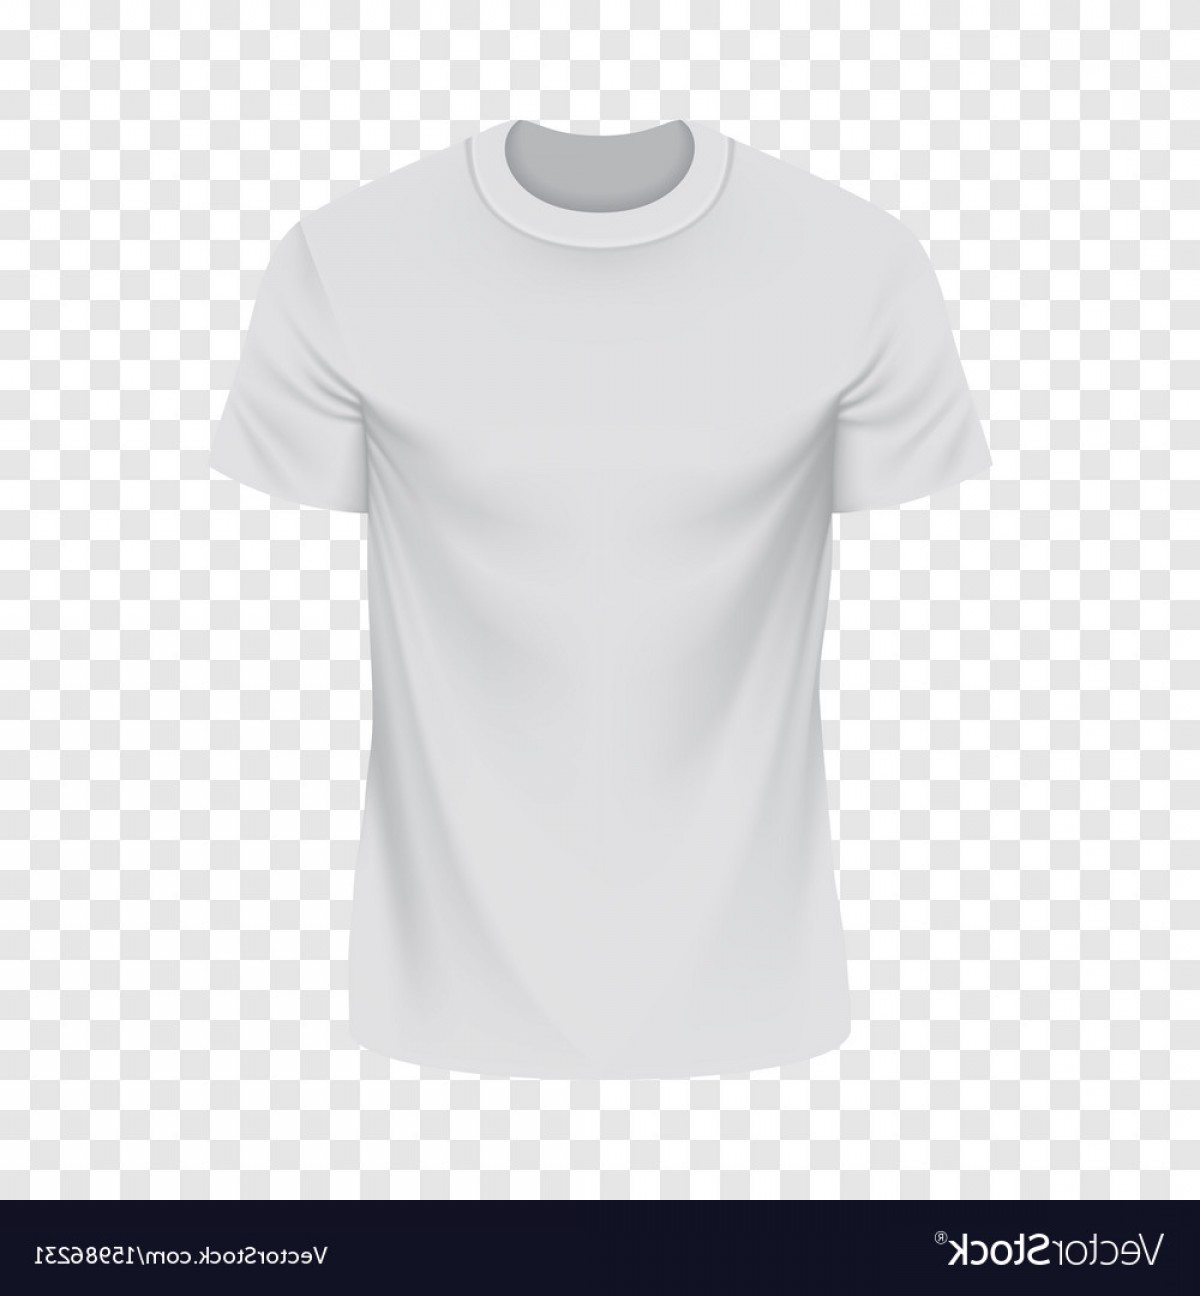 T Shirt Mockup Vector at GetDrawings | Free download